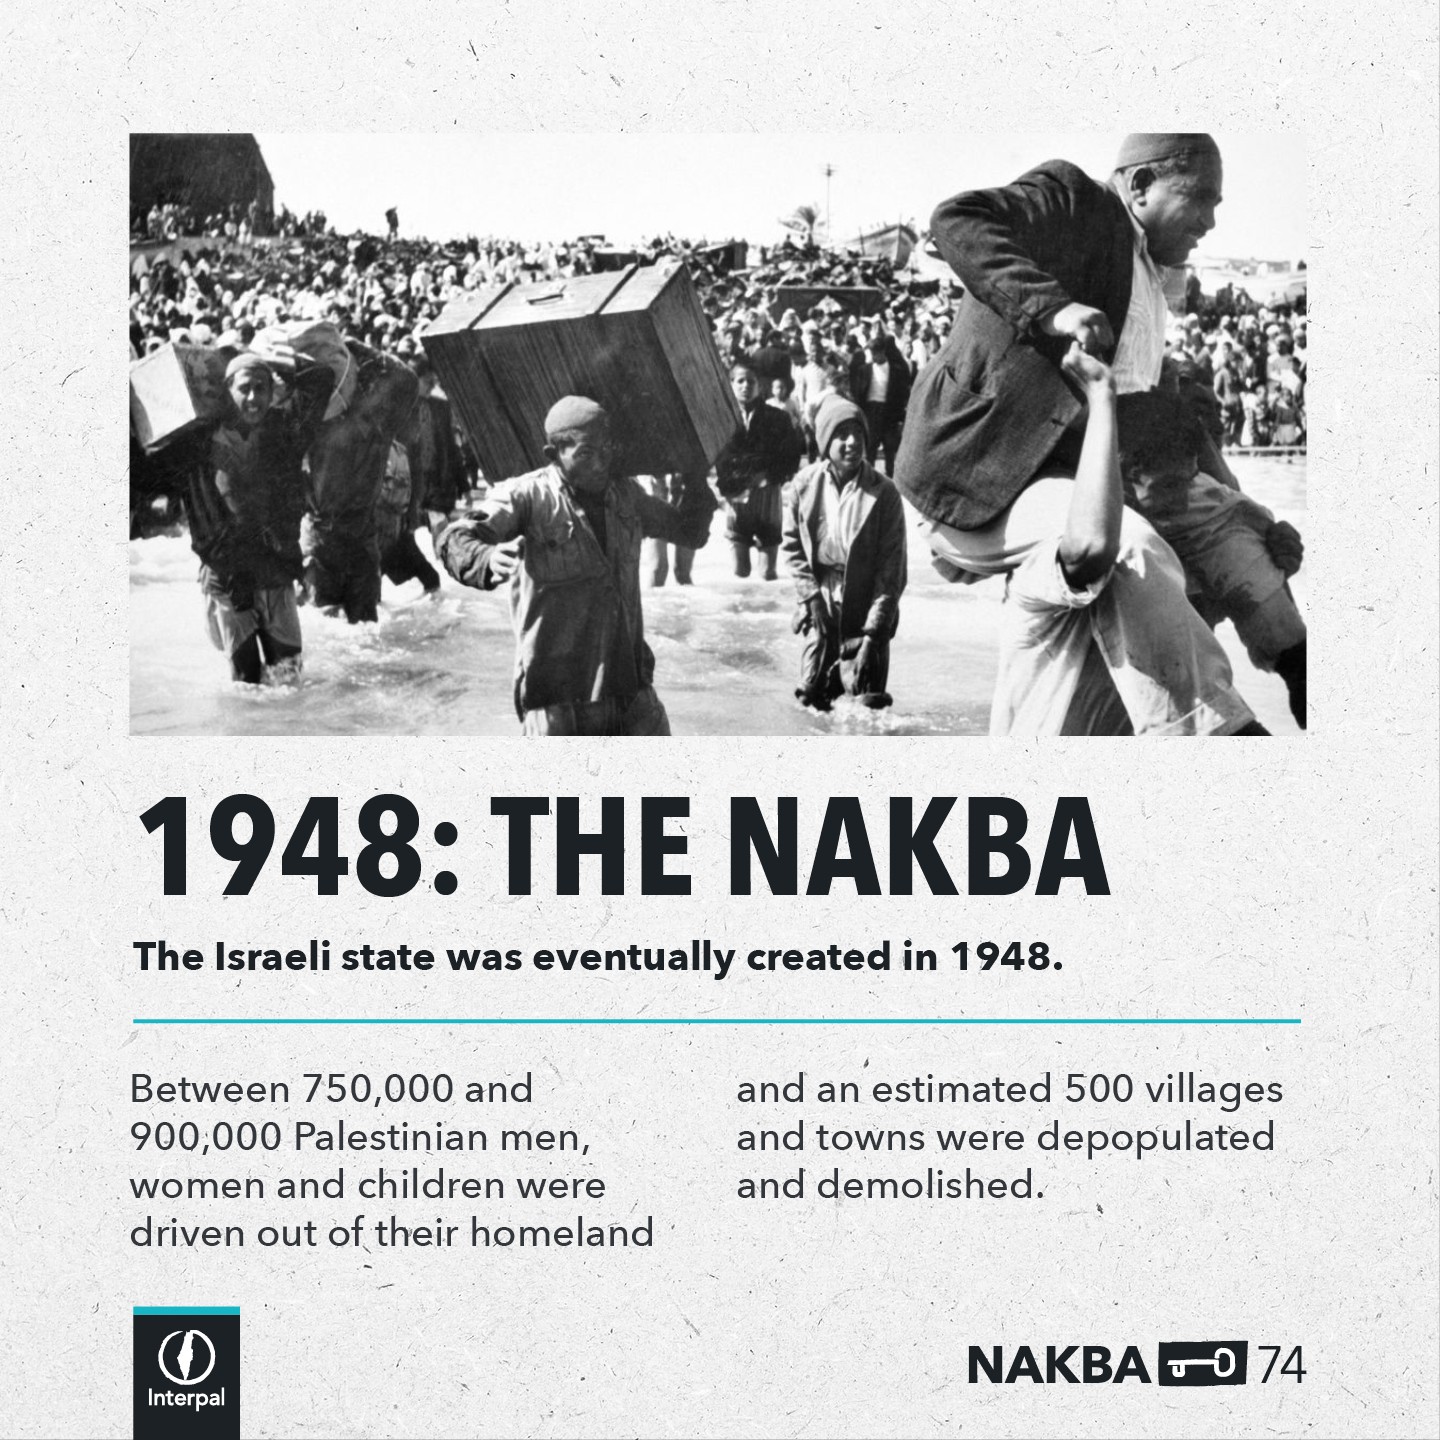 Interpal Nakba 74 Timeline 1948 A